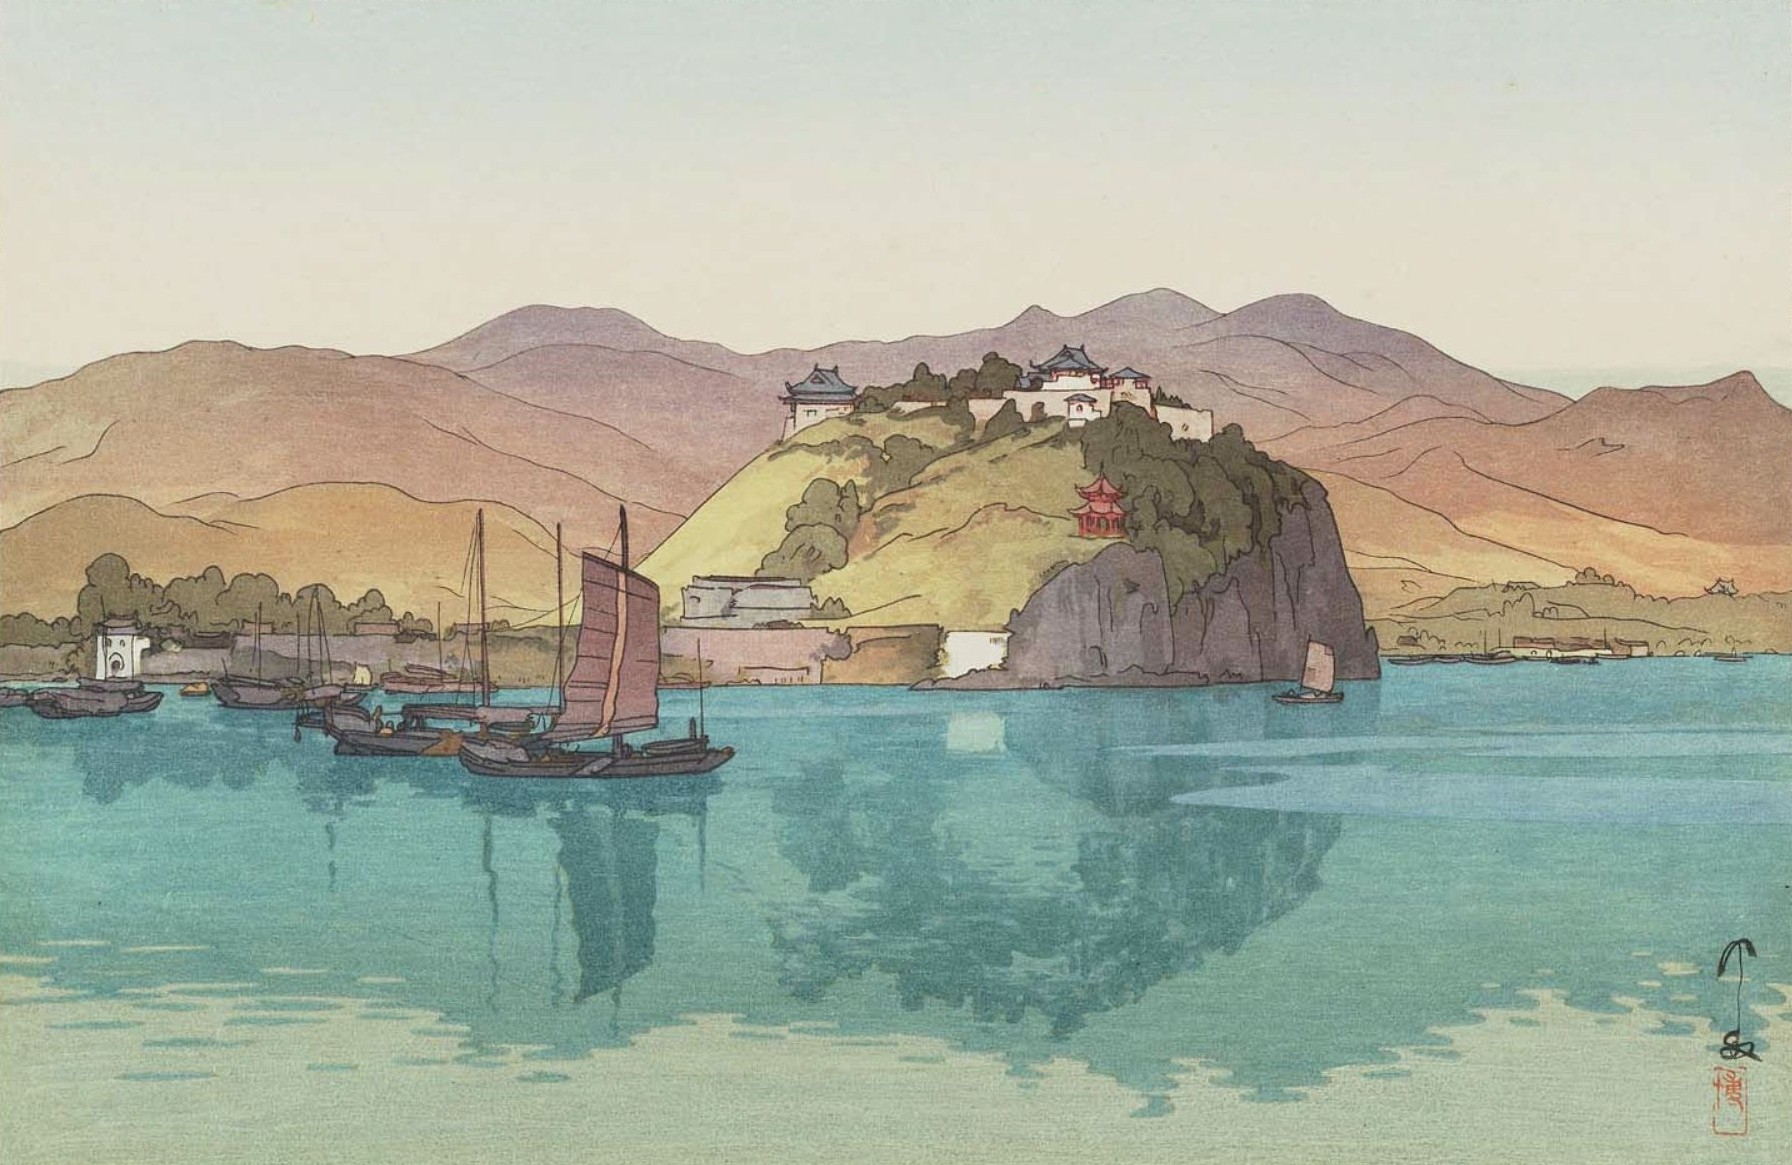 Yoshida Hiroshi Artwork Japanese Painting Mountains Water Boat 1792x1165